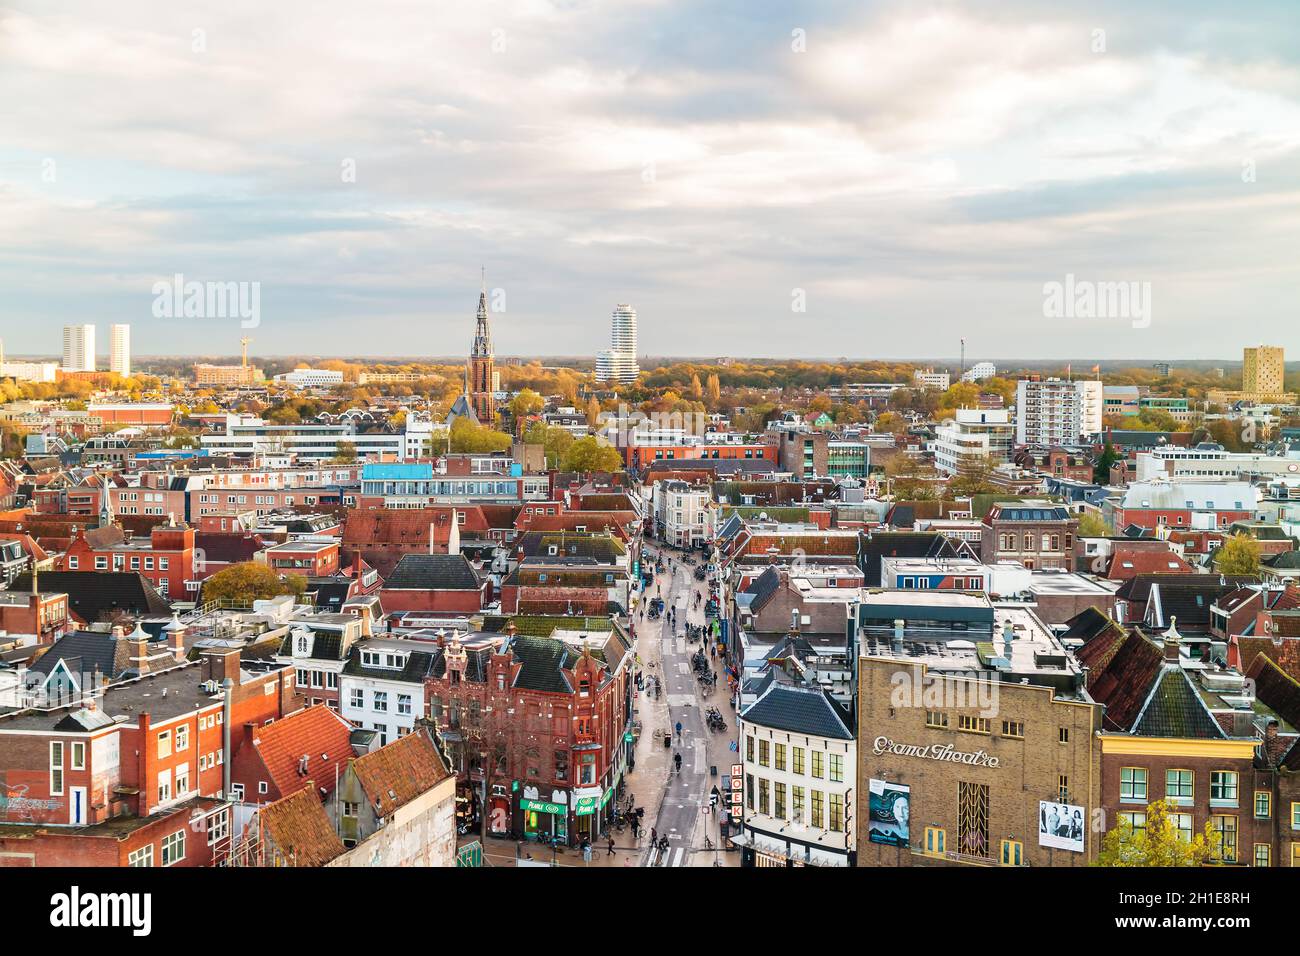 GRONINGEN, PAYS-BAS - 2 NOVEMBRE 2017 : vue aérienne de la rue commerçante Oosterstraat avec magasins et magasins à Groningen, pays-Bas Banque D'Images